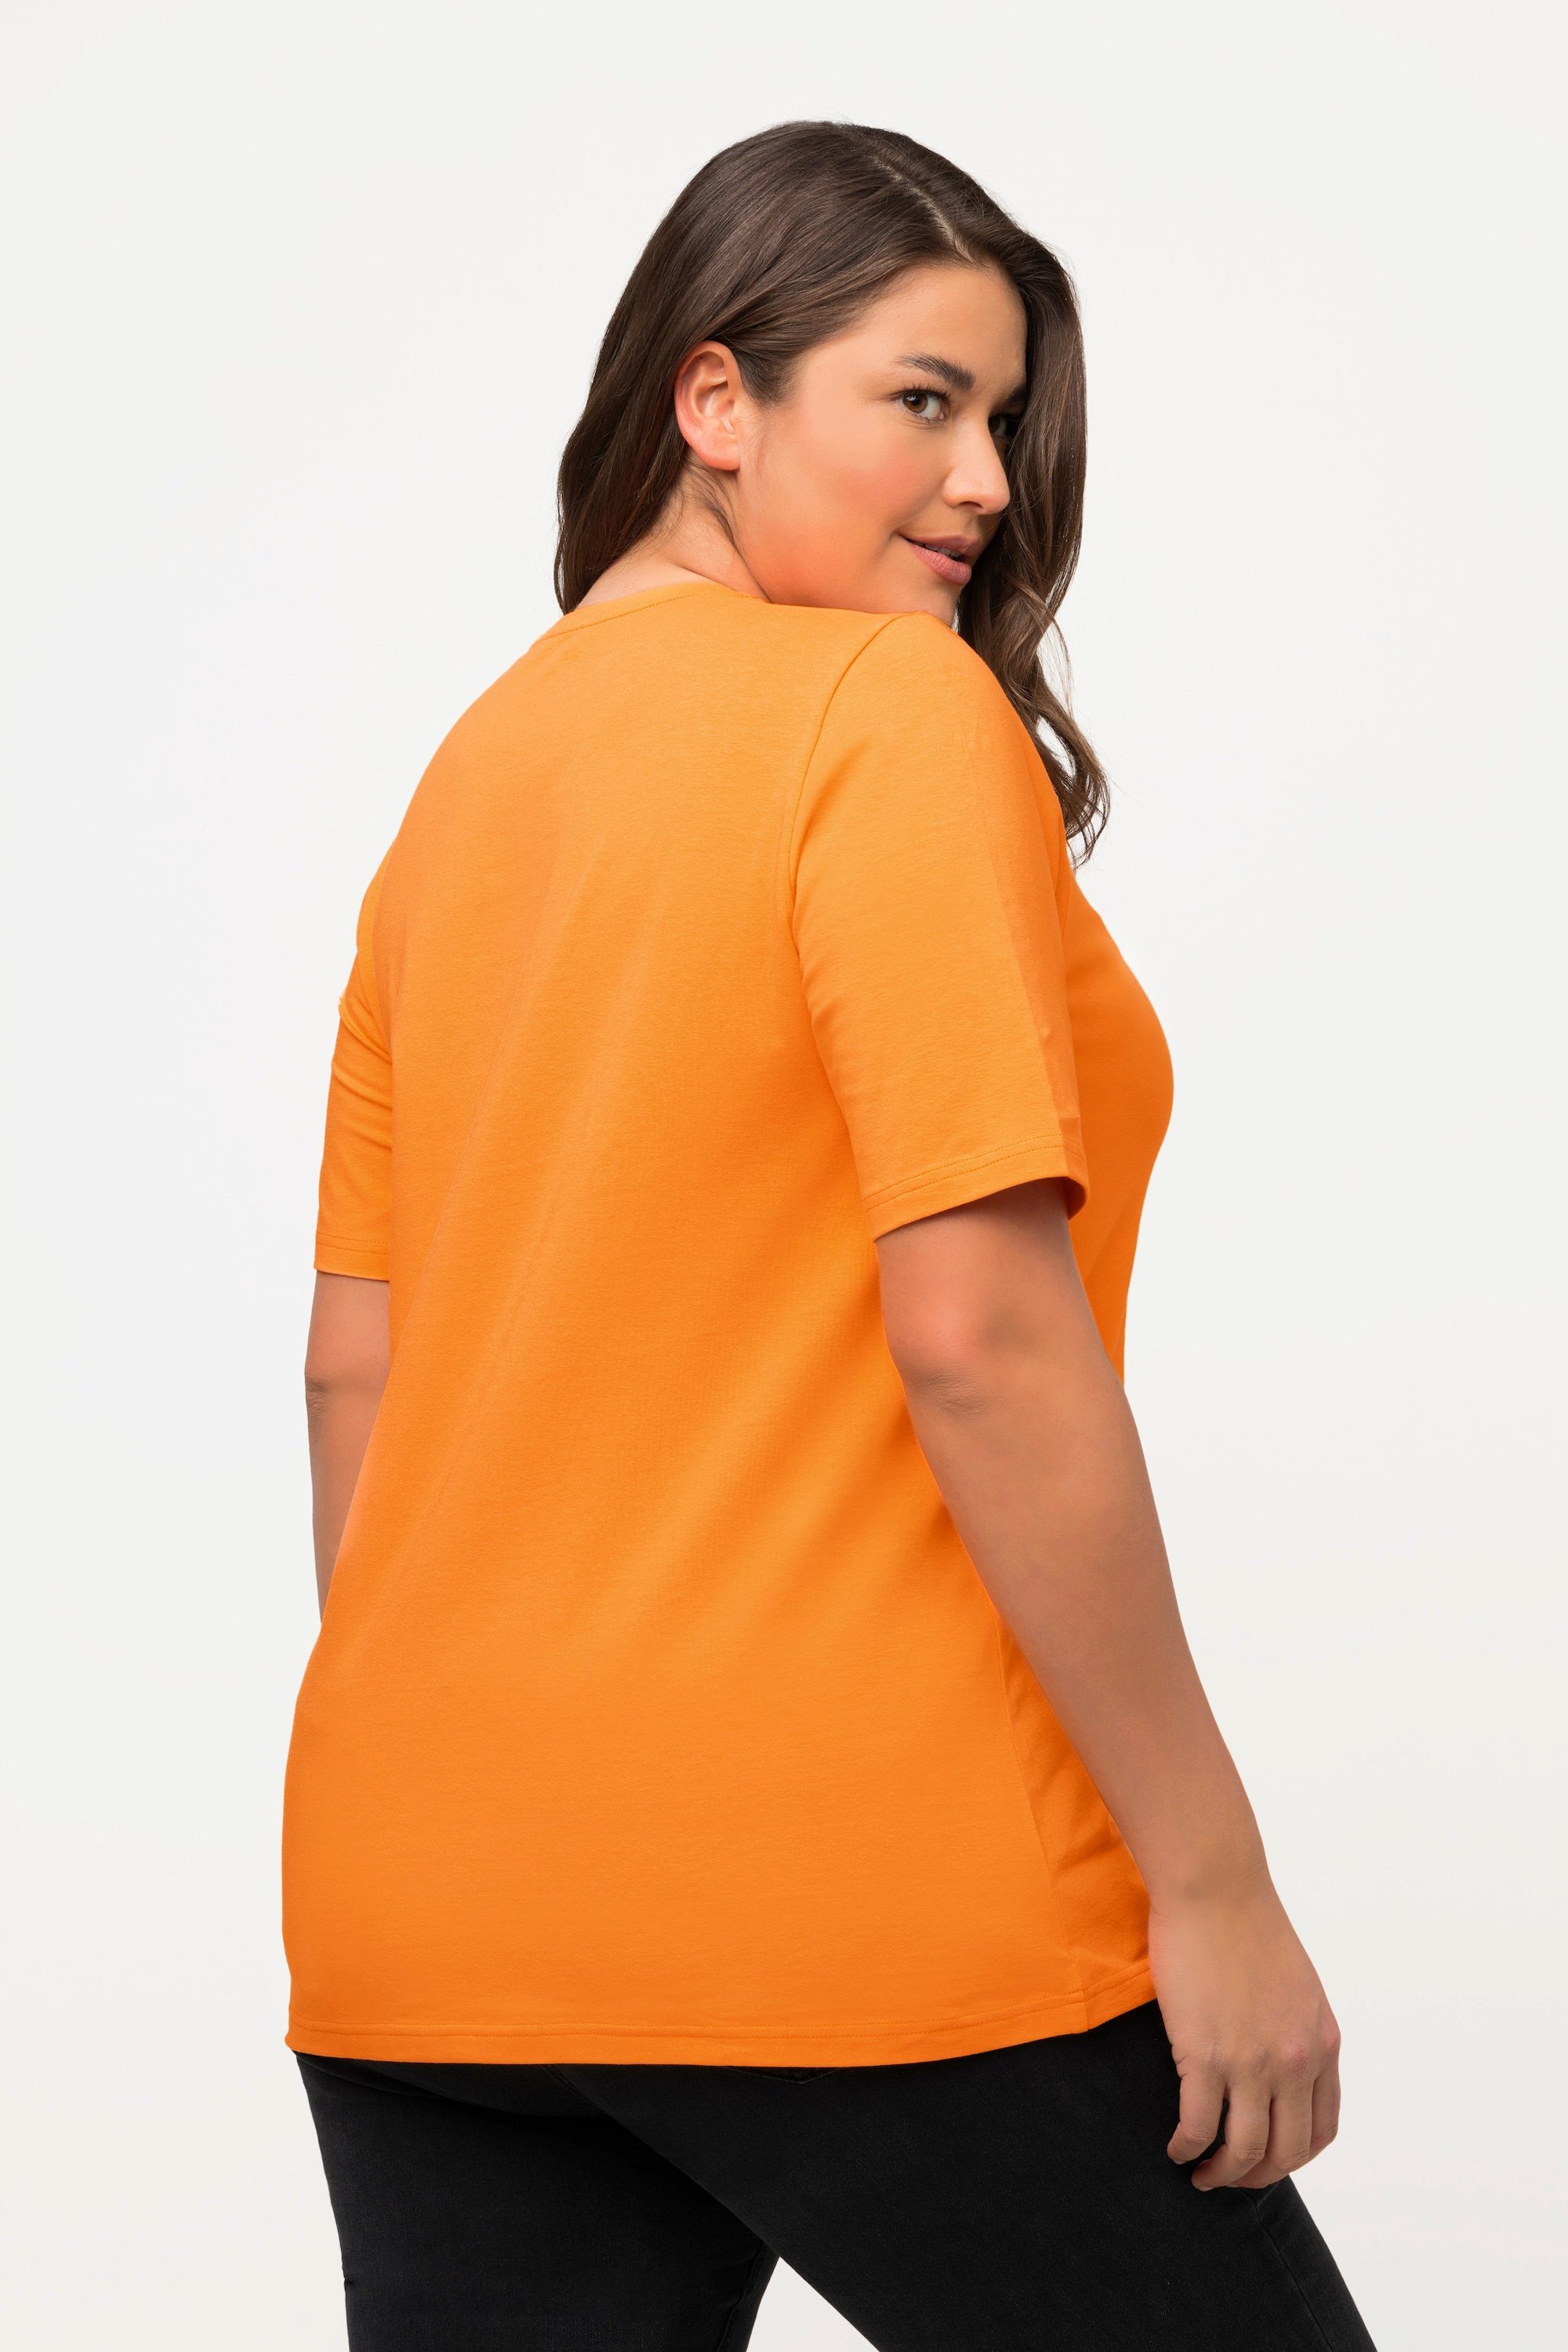 Popken Rundhalsshirt T-Shirt Ulla A-Linie Halbarm cantaloupe orange V-Ausschnitt